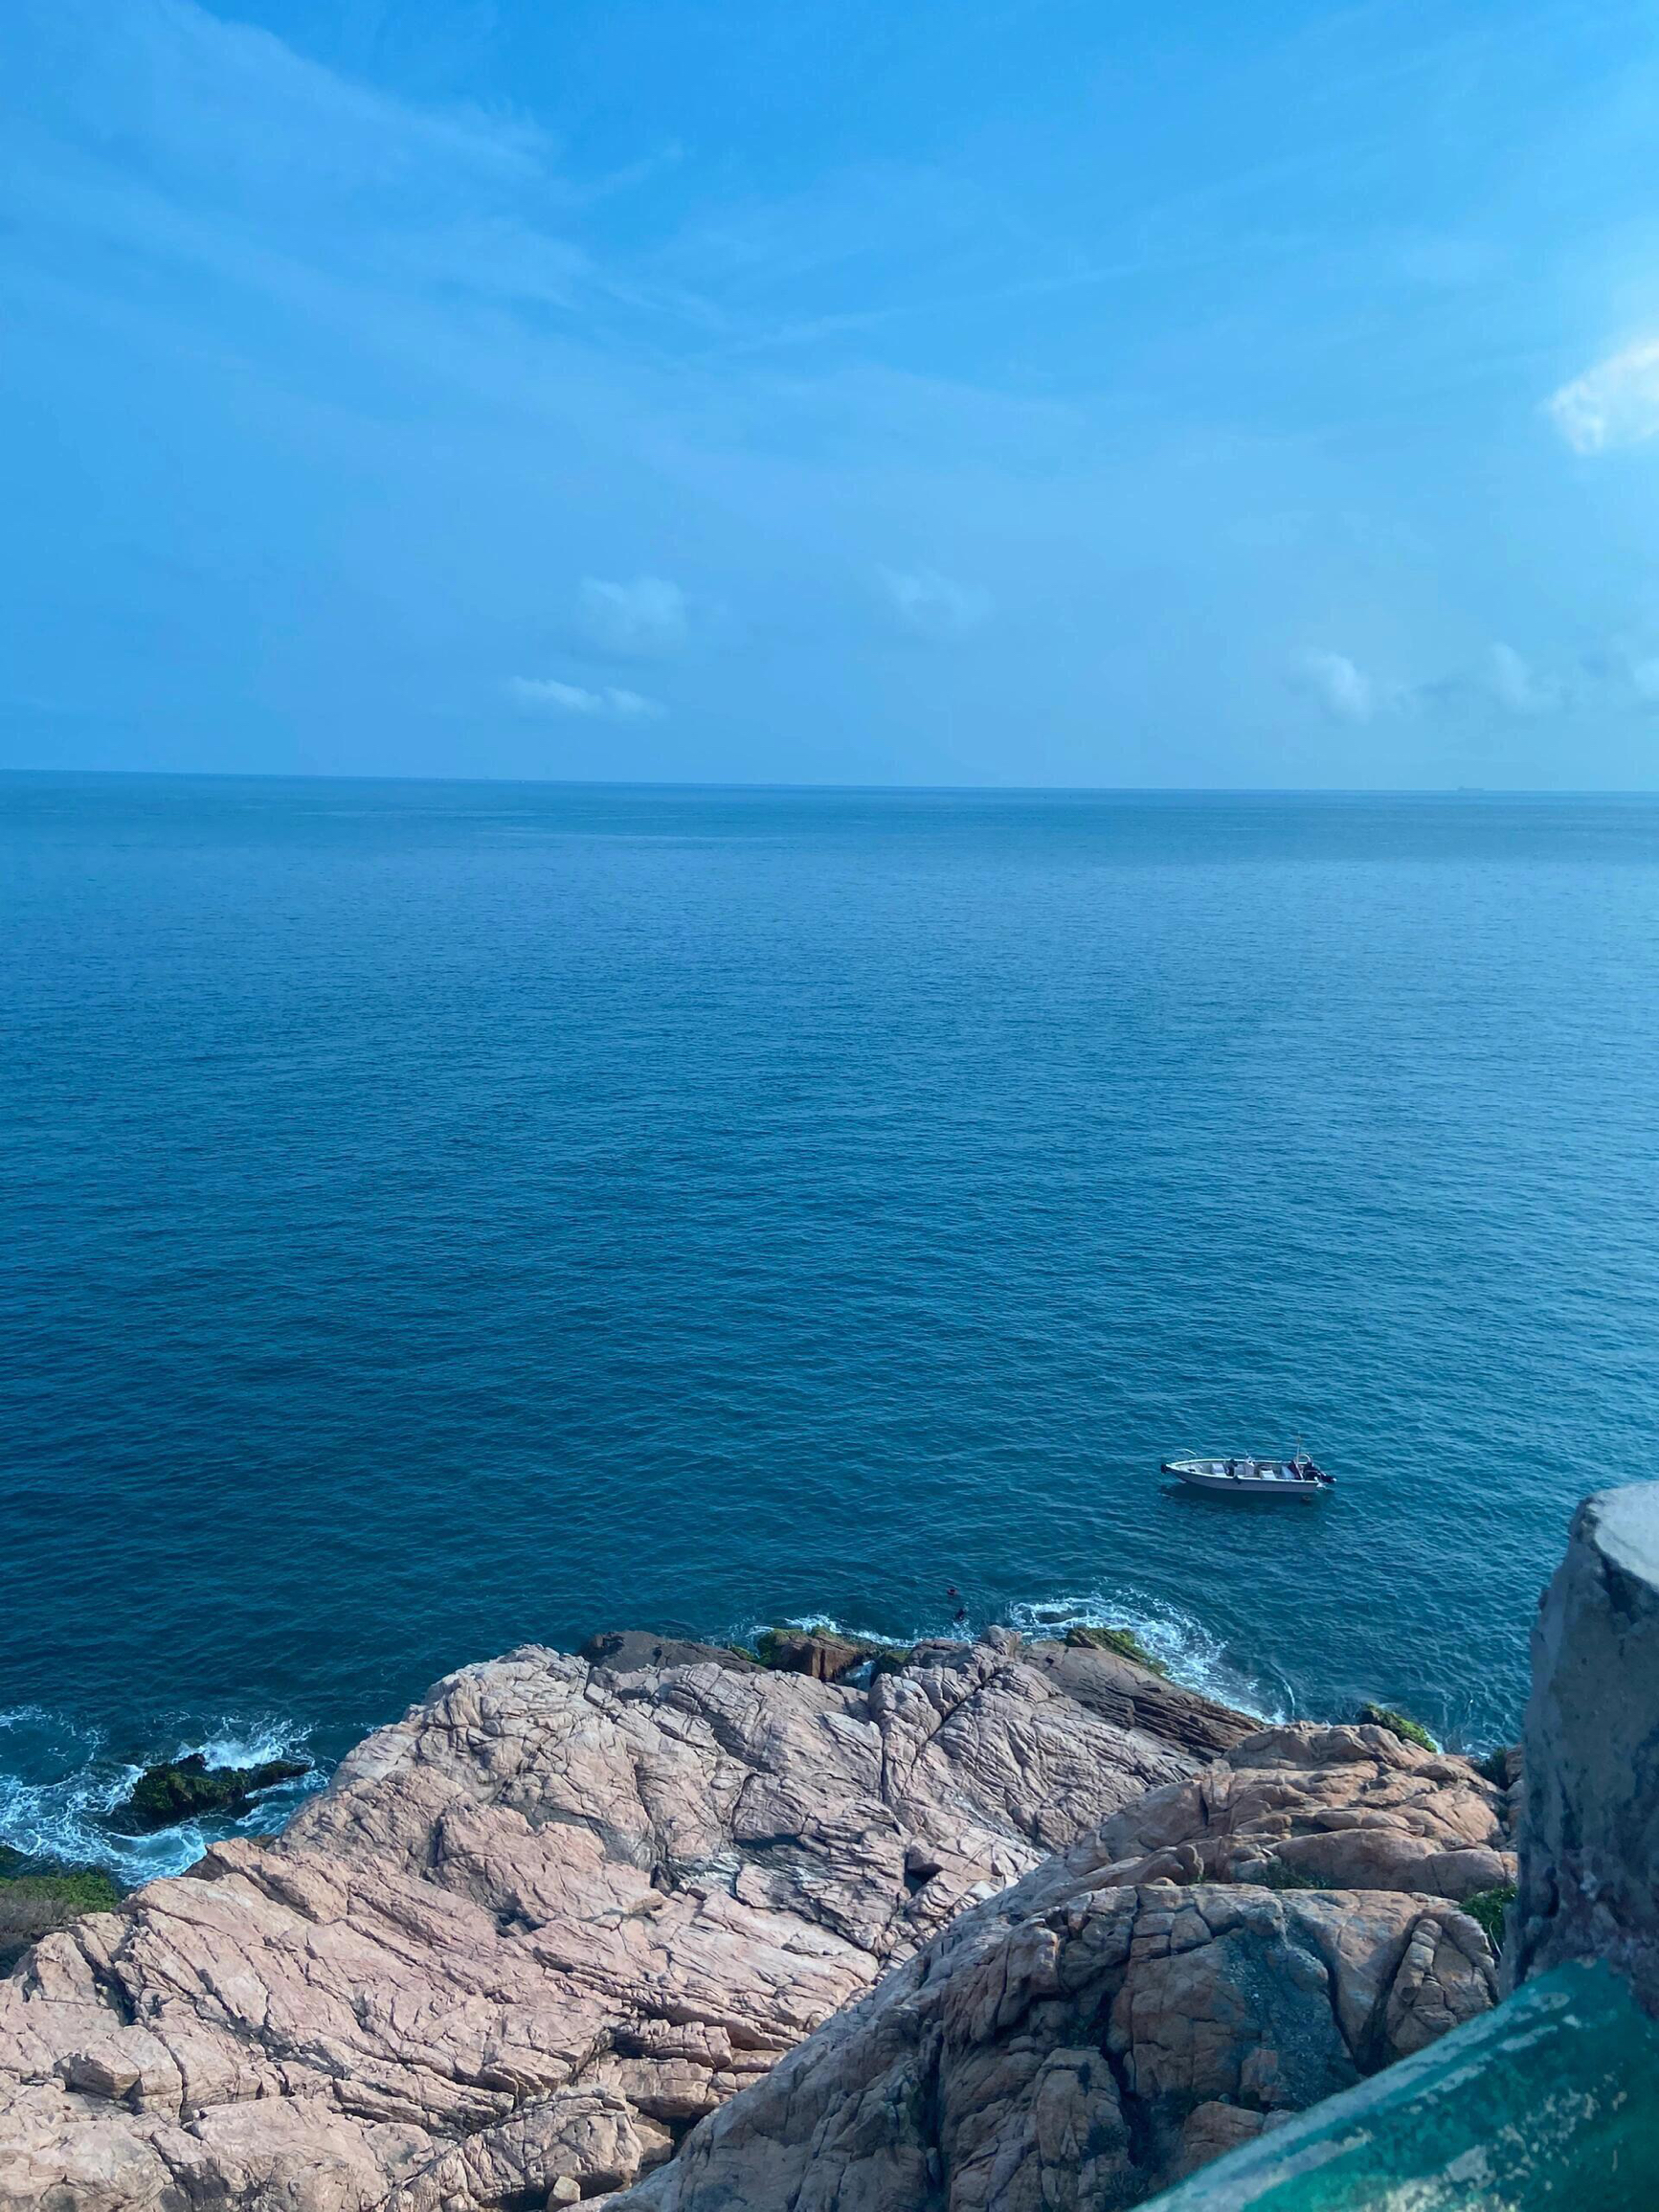 不说谁知道这是在惠州呢～ 这海水蓝得简直不要太好看了 #海龟湾#惠州旅游#惠州推荐#双月湾#广东周边